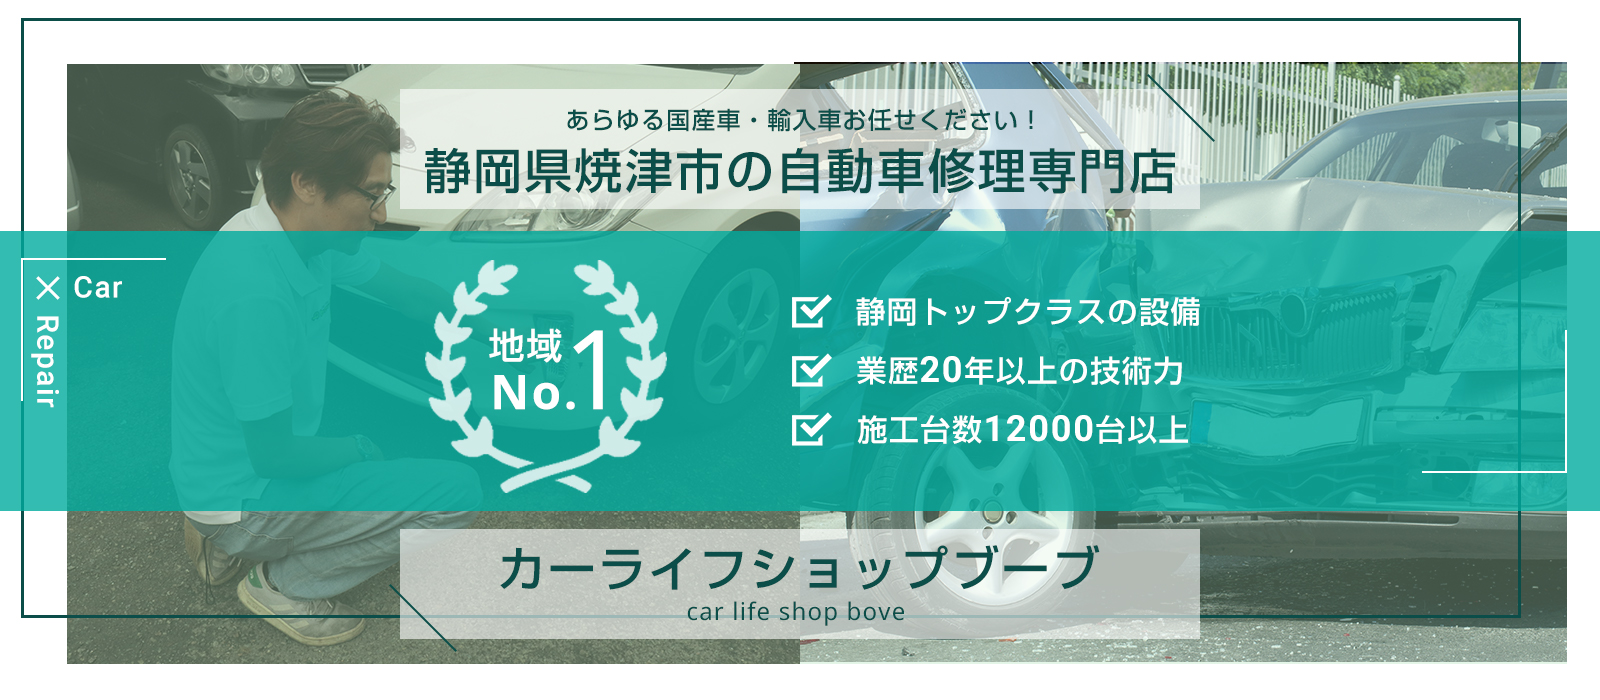 静岡県焼津市の自動車修理専門店